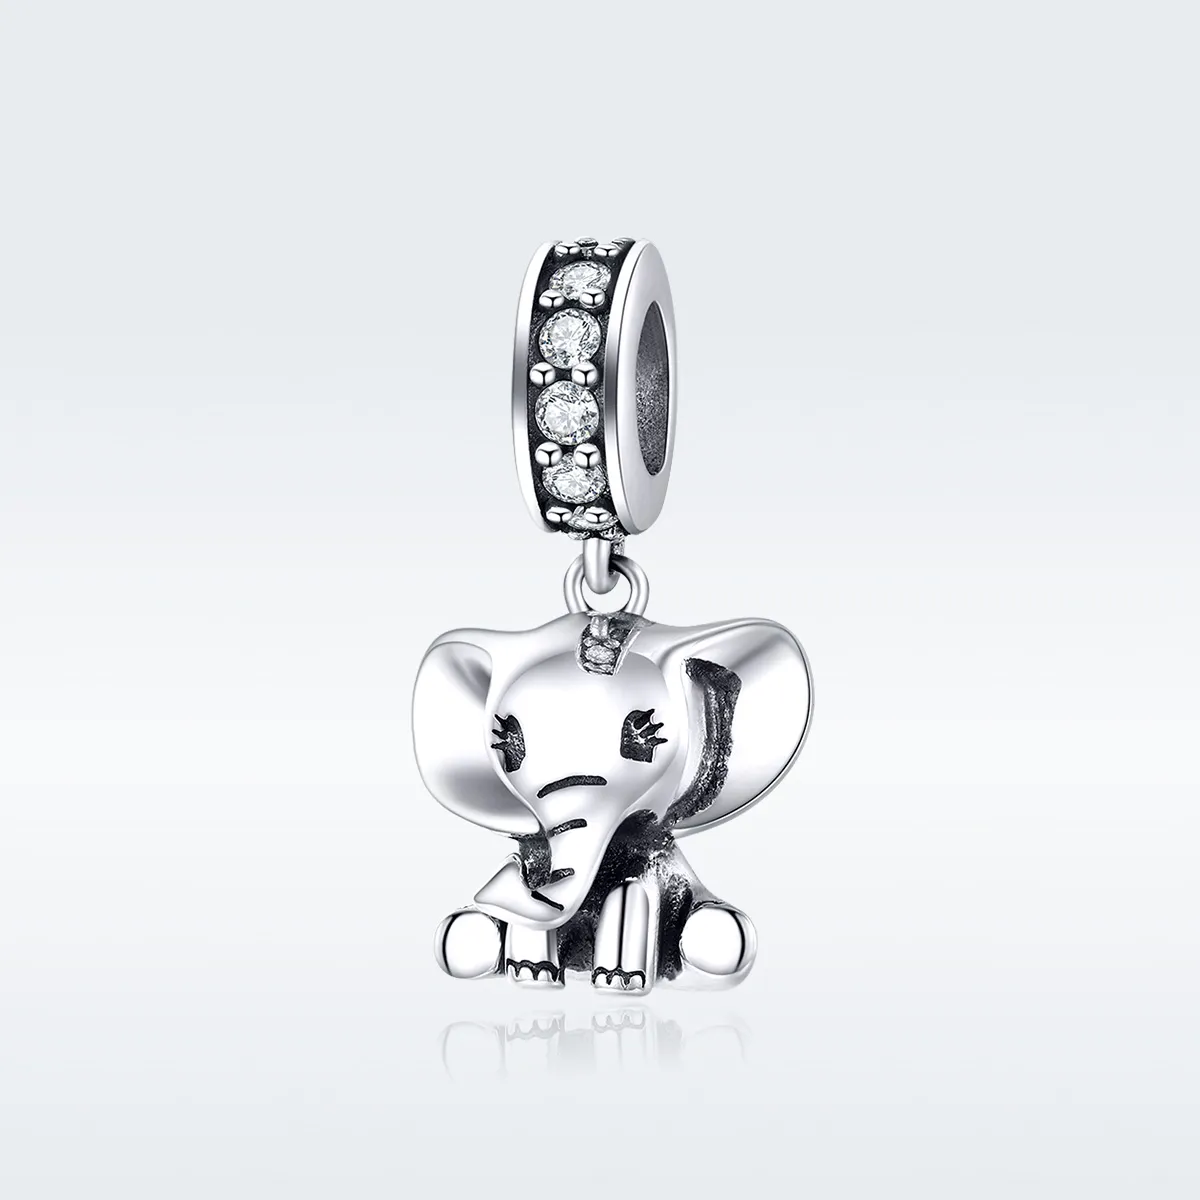 Talisman pandantiv Tip Pandora cu Micul Elefant din argint - SCC1338